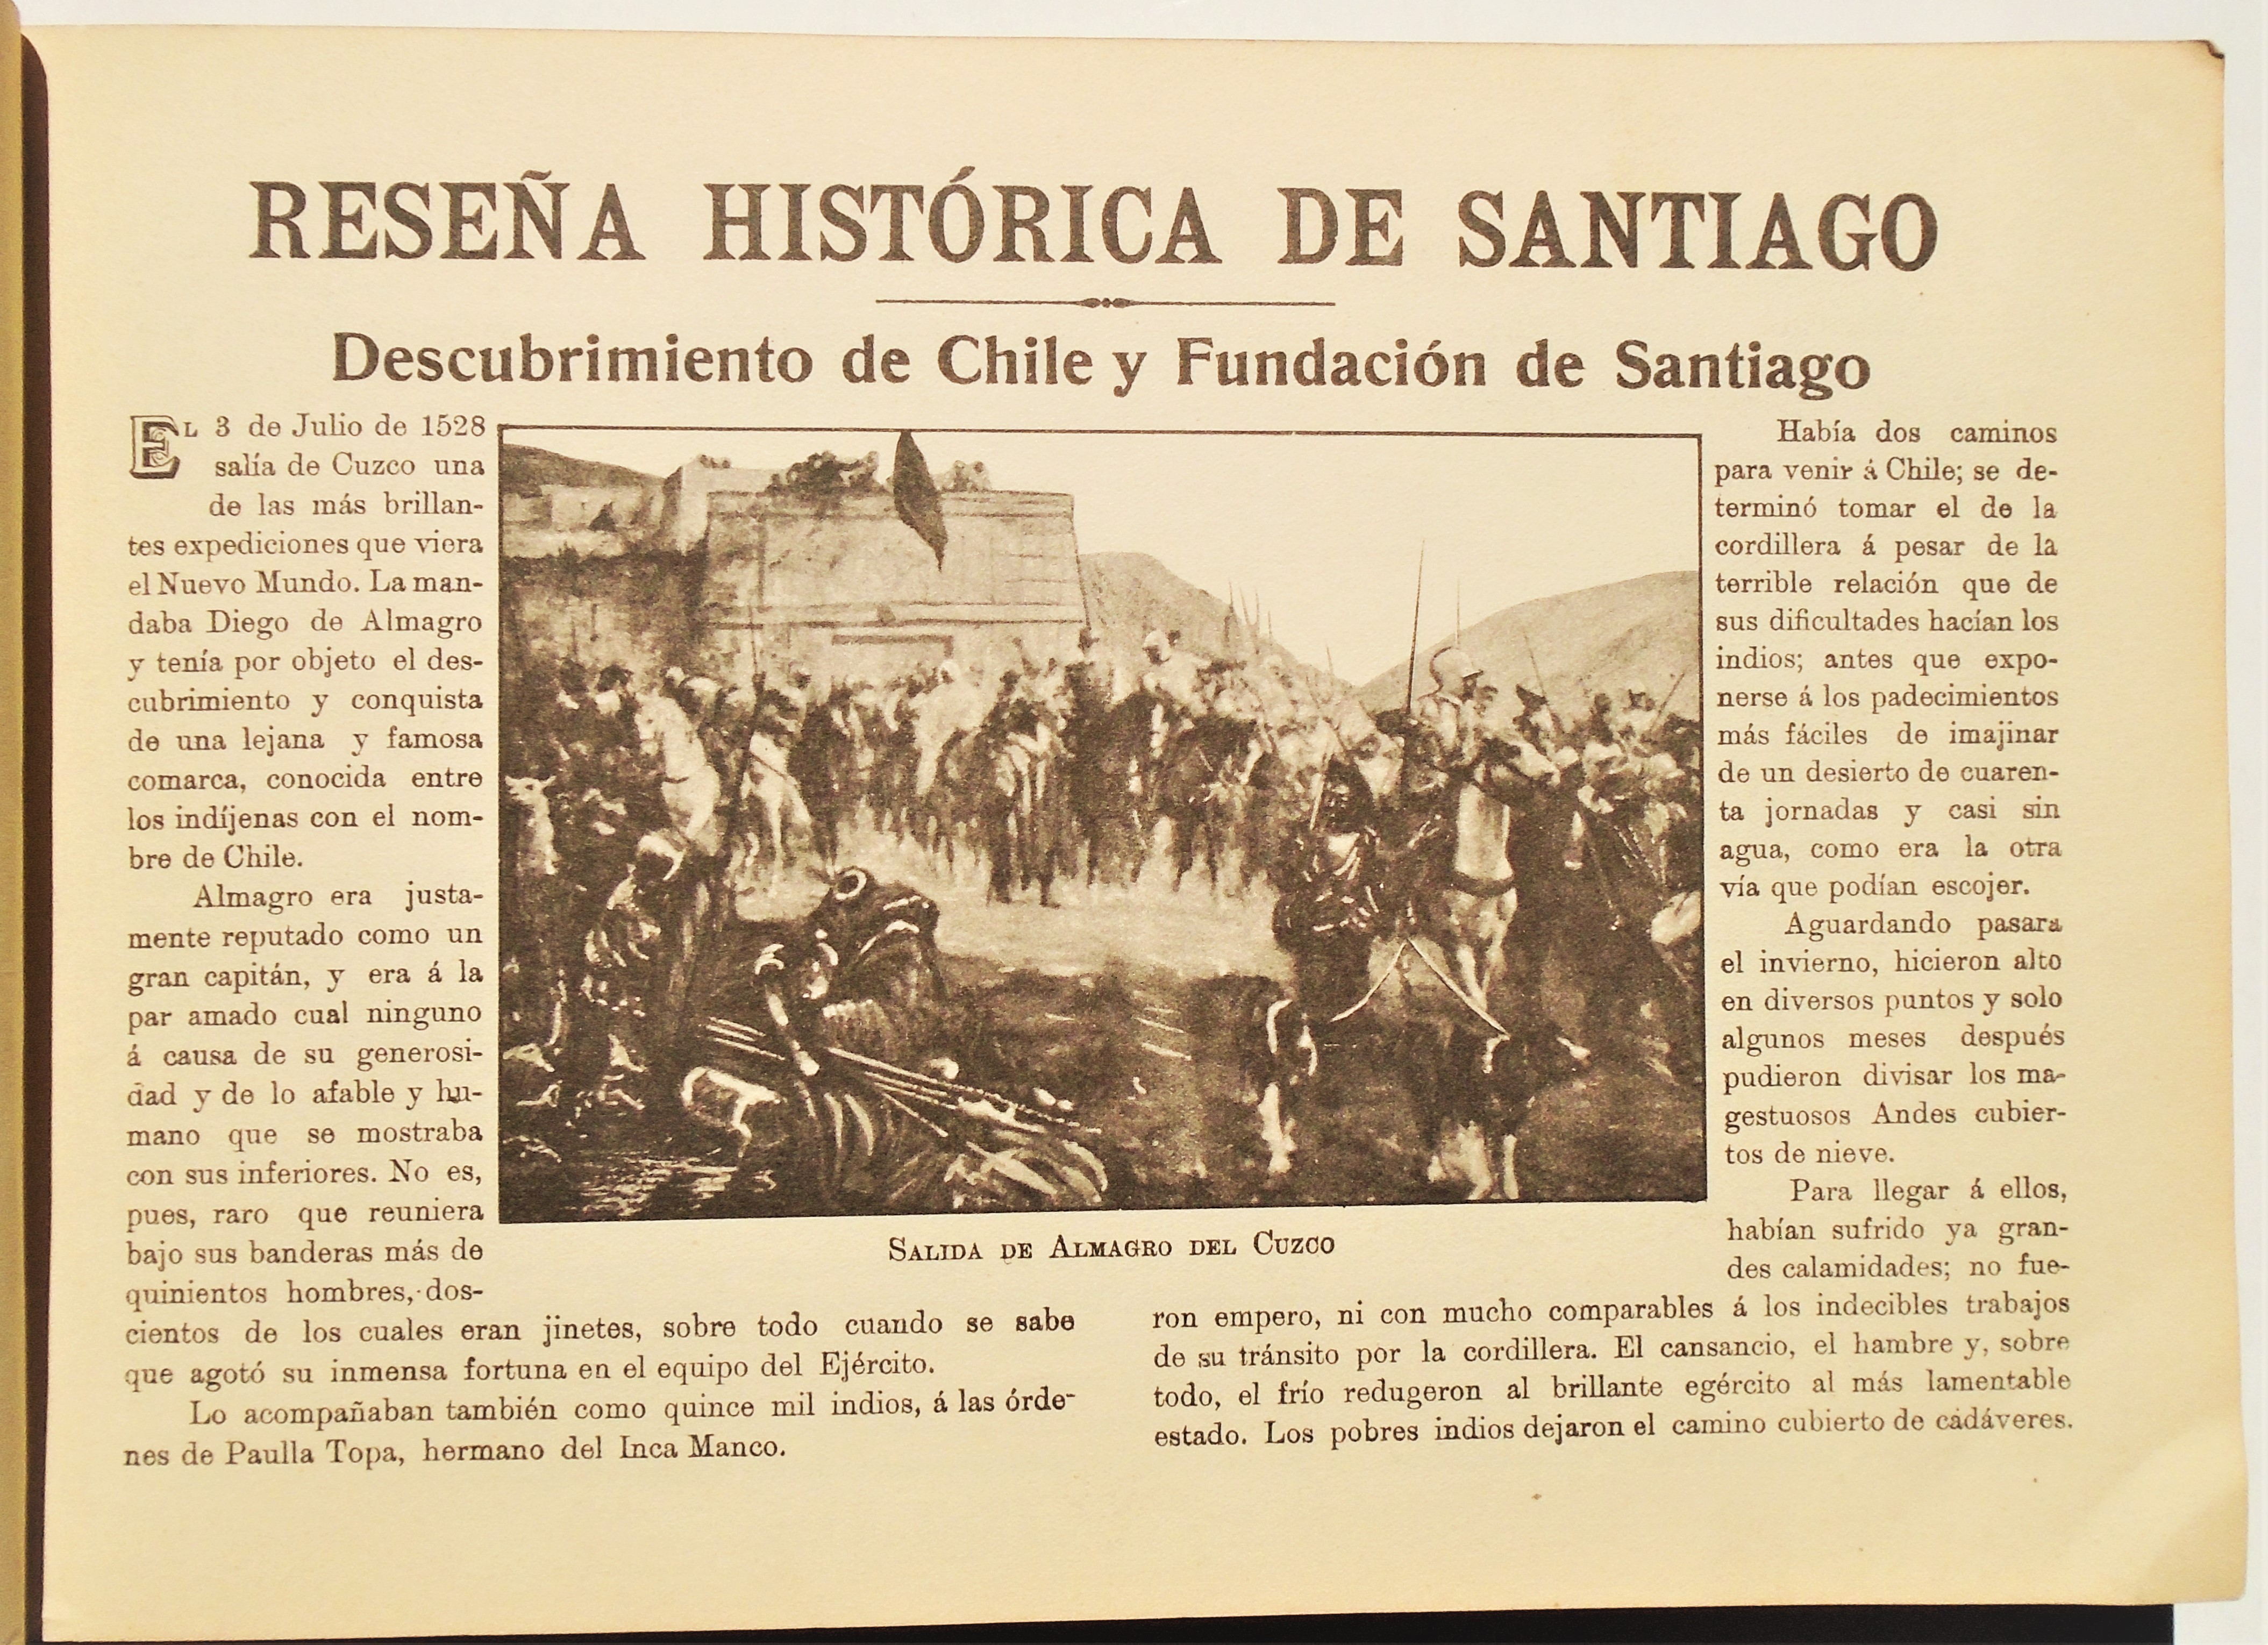 Jorge Walton S. - Álbum de Santiago y vistas de Chile